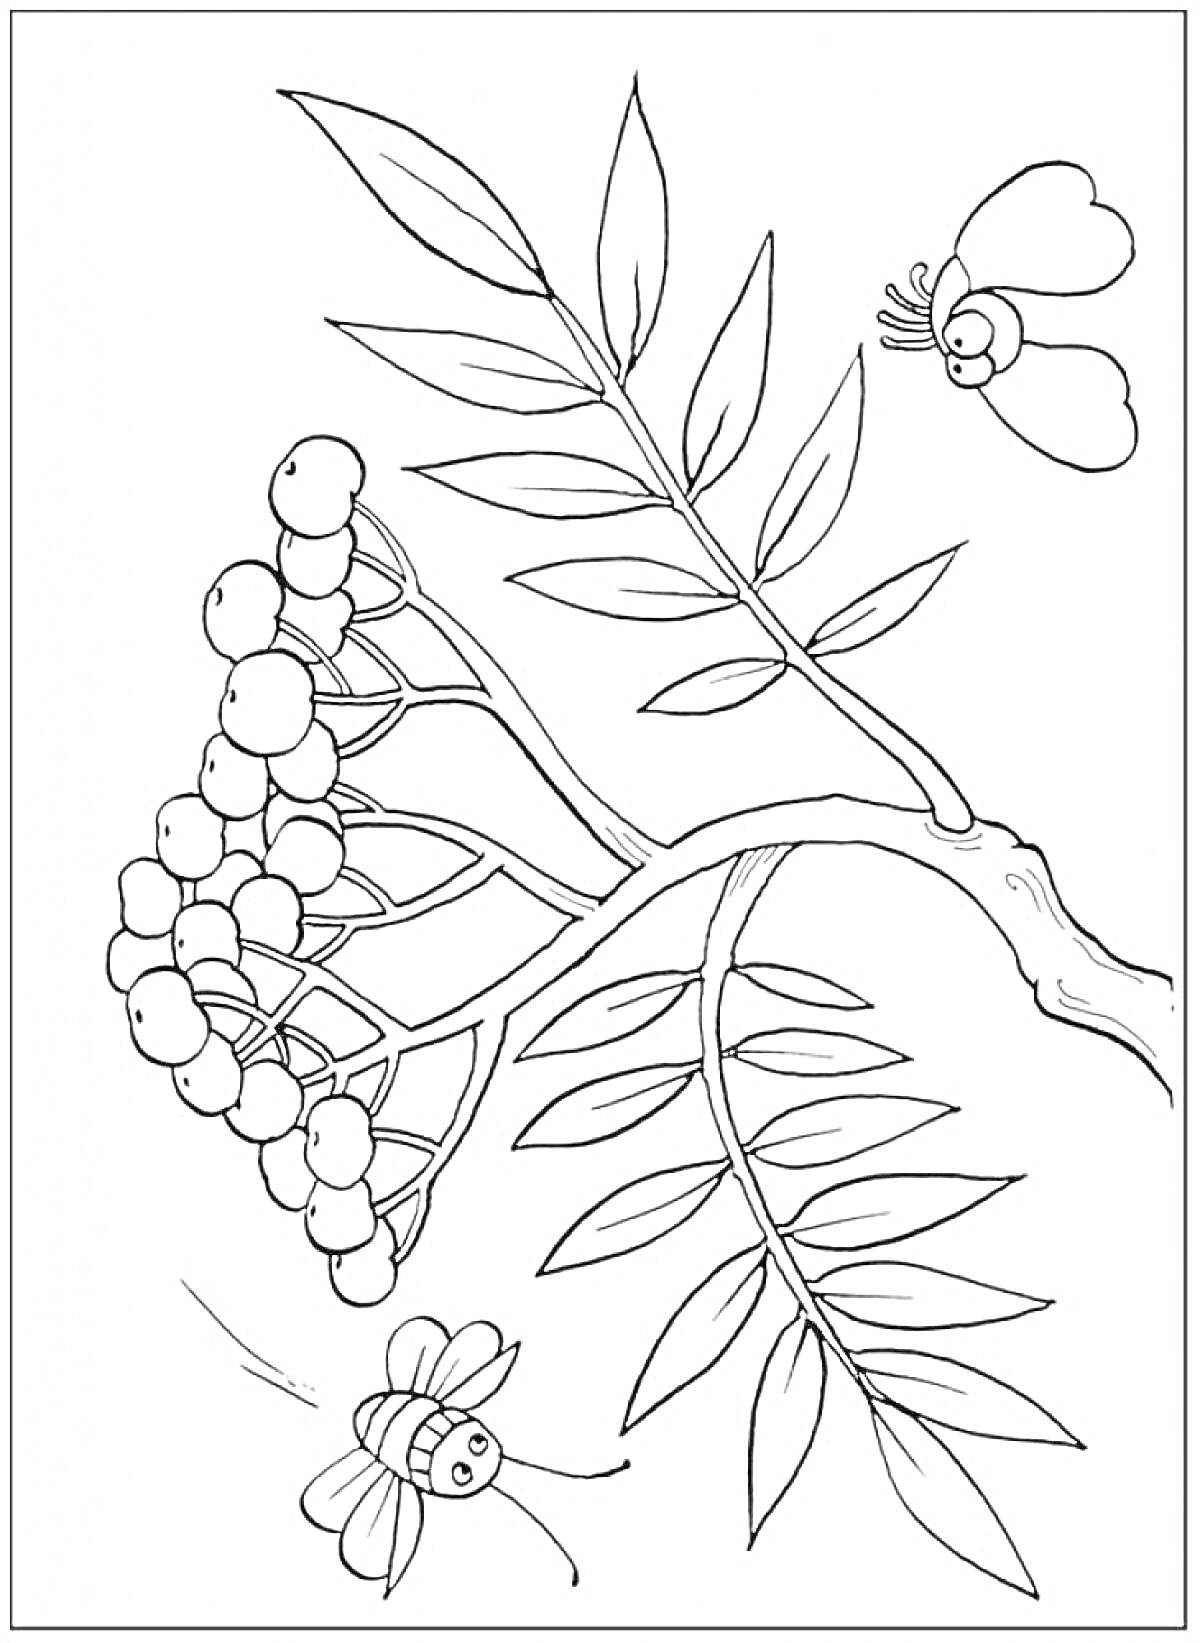 Раскраска Ветка рябины с ягодами, листьями, бабочкой и пчелой